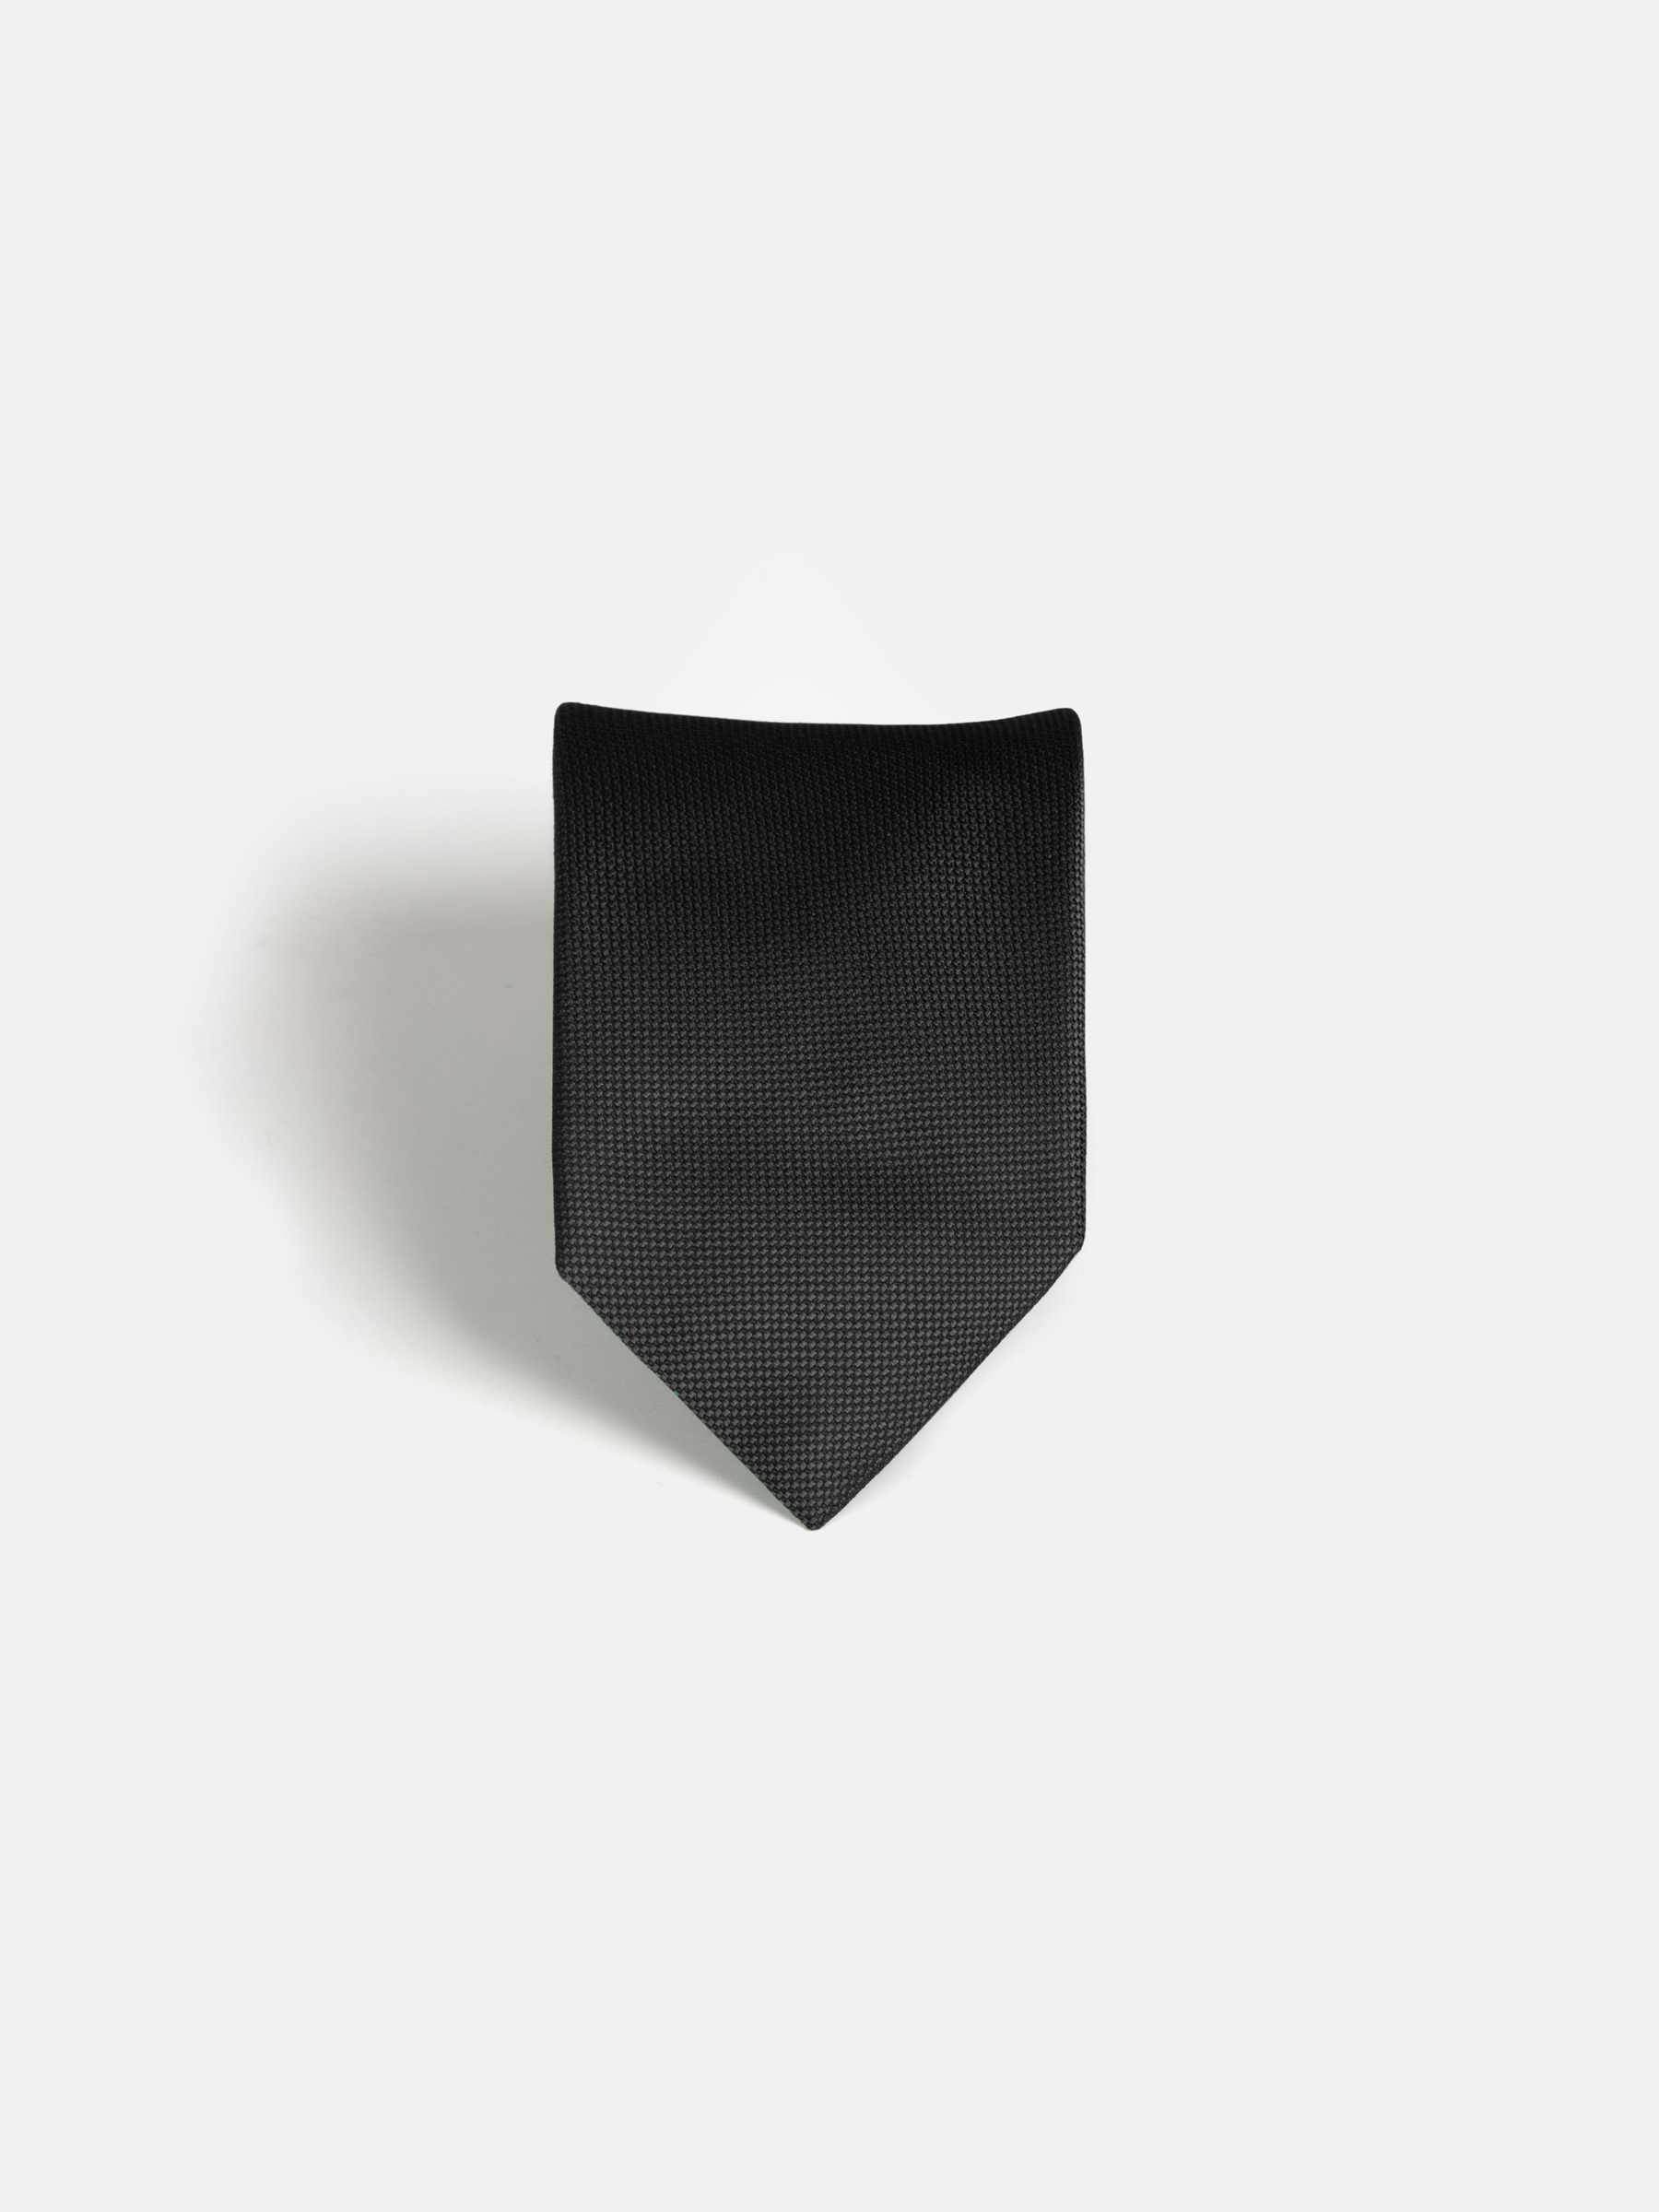 Zavier Black Tie